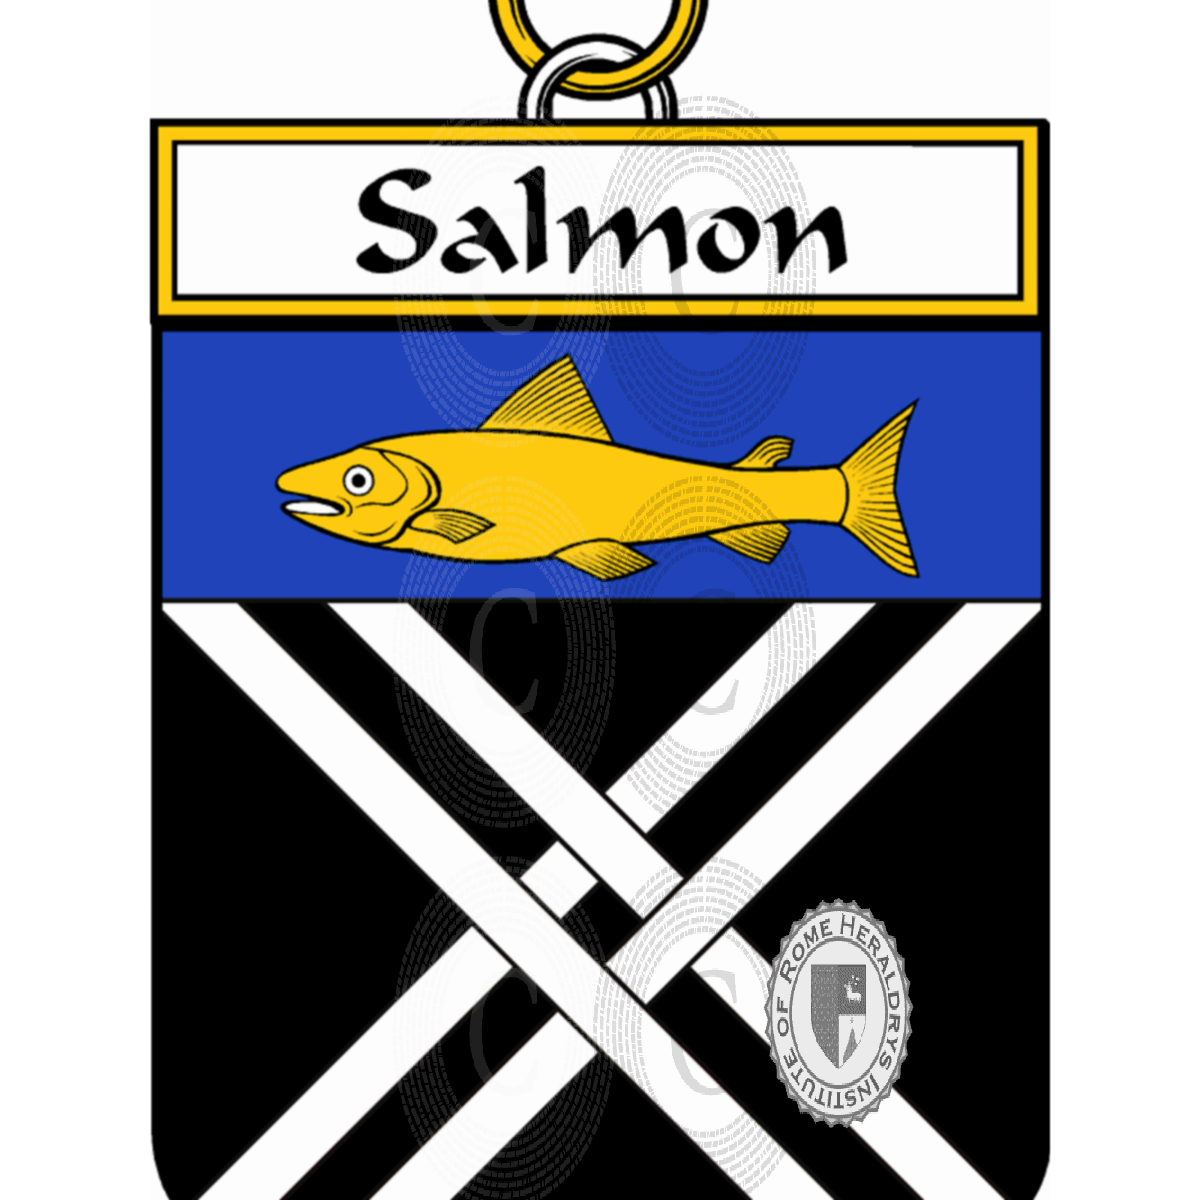 Stemma della famigliaSalmon, de Salmon,de Salmon de Belleverge,Salmon de Loiré,Salmon du Chastillier,Salmon du Clos